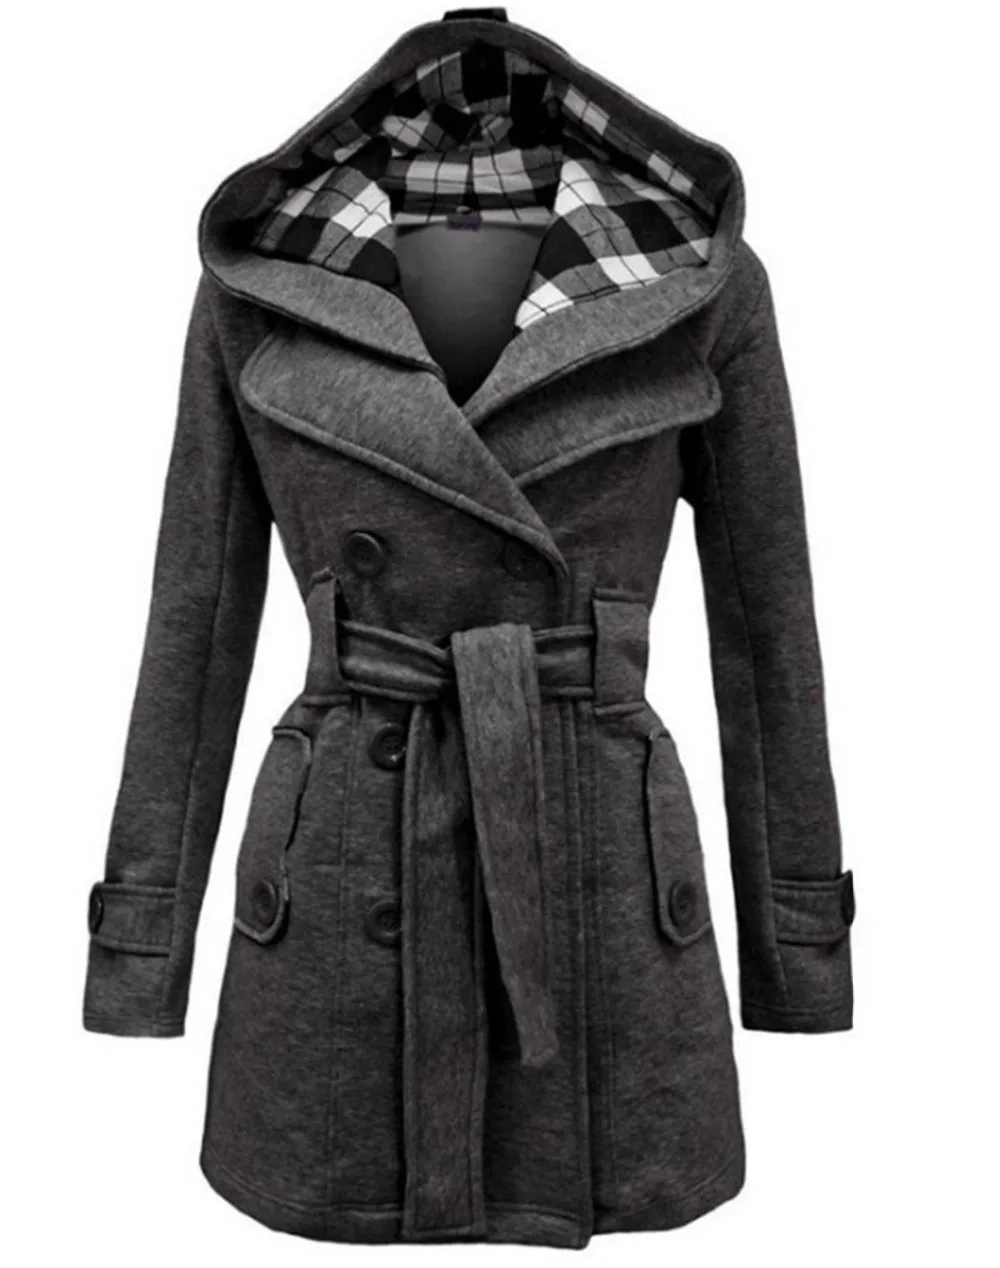 Осень Зима Женское модное длинное шерстяное пальто красная верхняя одежда женское пальто с капюшоном повседневные куртки теплый флис для женщин пальто